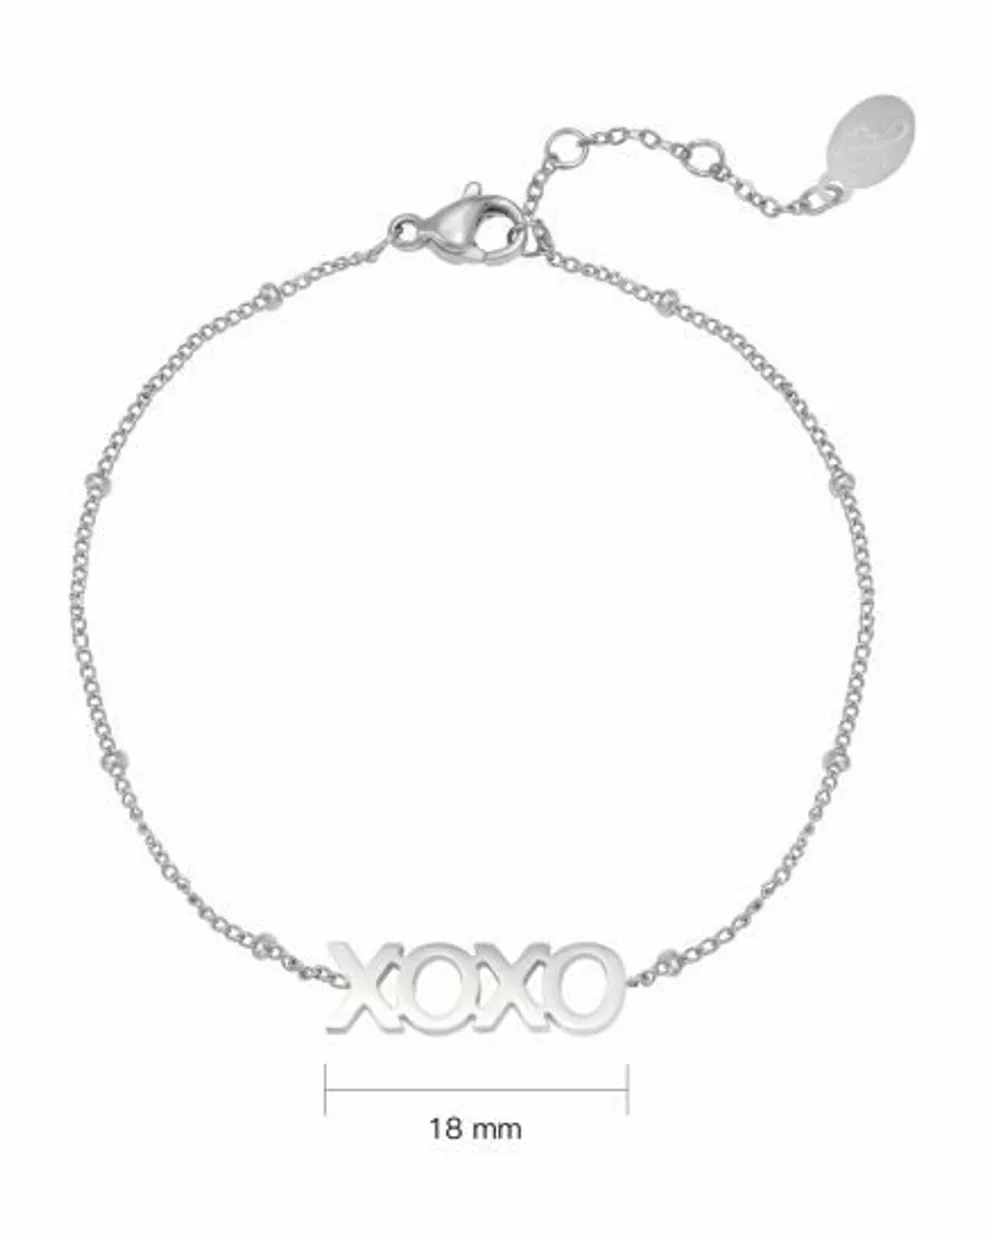 Bracelet dotted XOXO silver